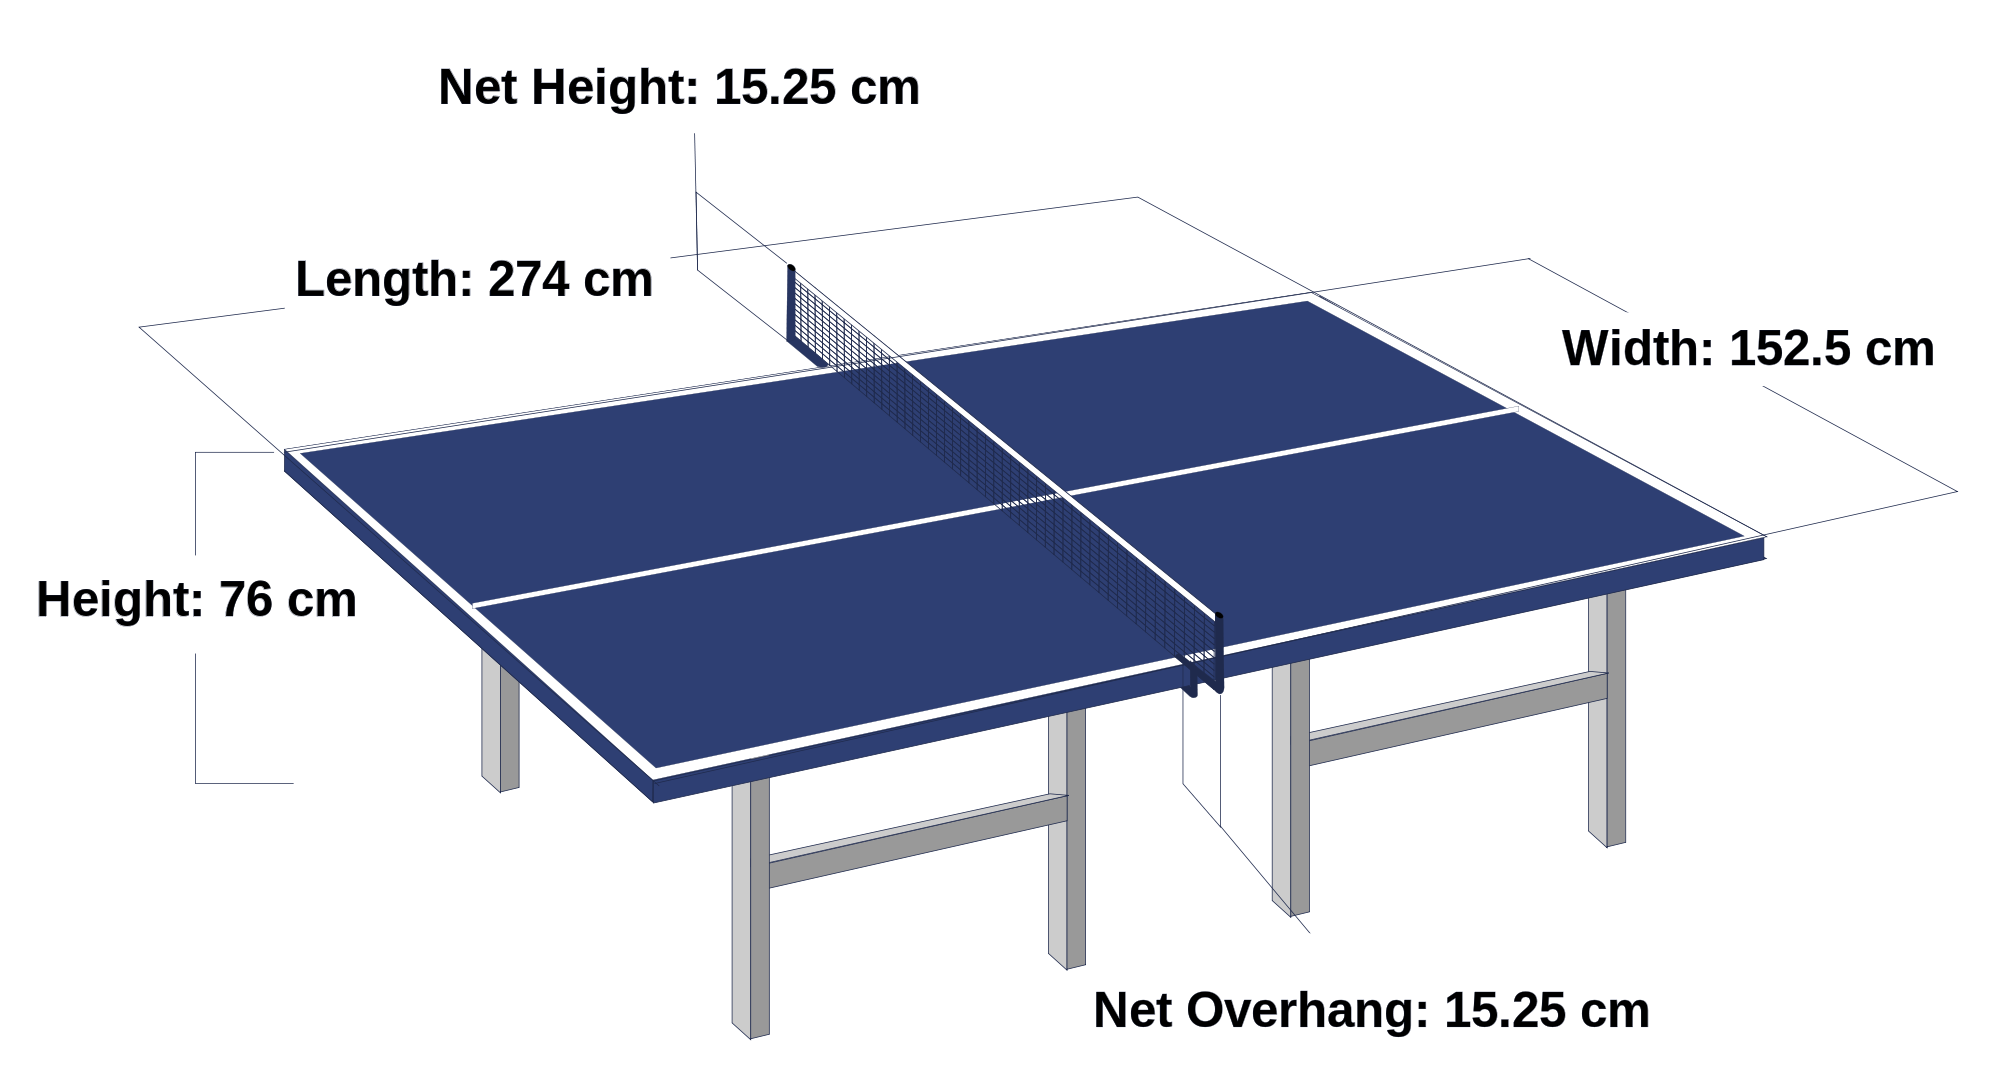 Размеры теннисного стола для настольного тенниса стандарт. Размеры настольного теннисного стола стандарт. Размер теннисного стола для настольного тенниса. Габариты теннисного стола. Настольный теннис расчет